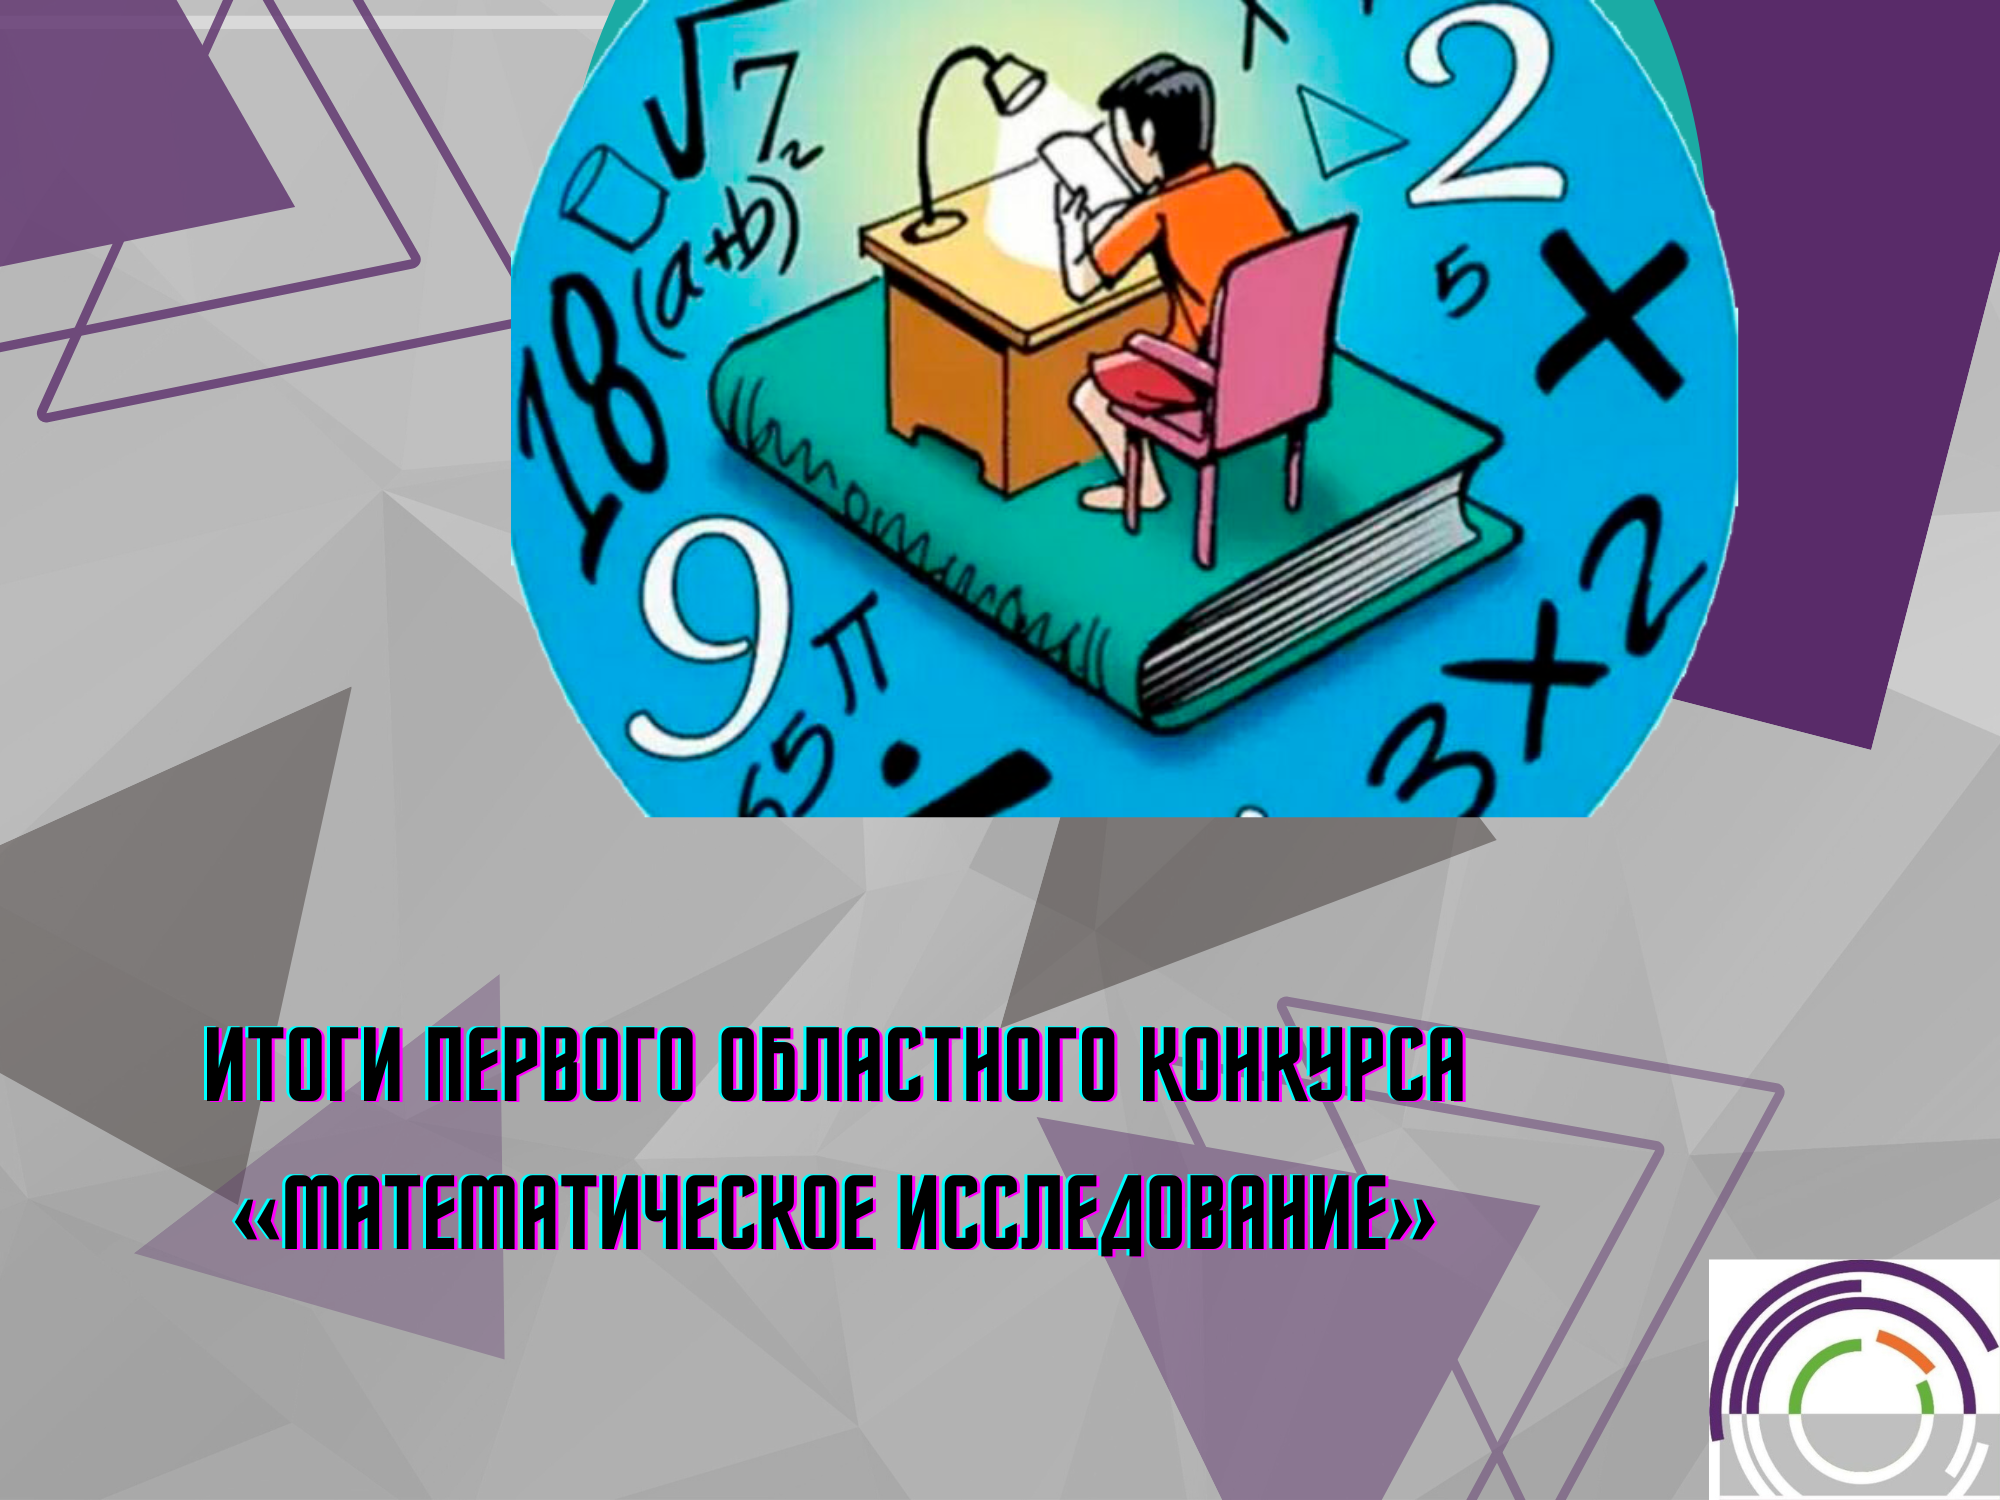 Итоги первого областного конкурса «Математическое исследование»